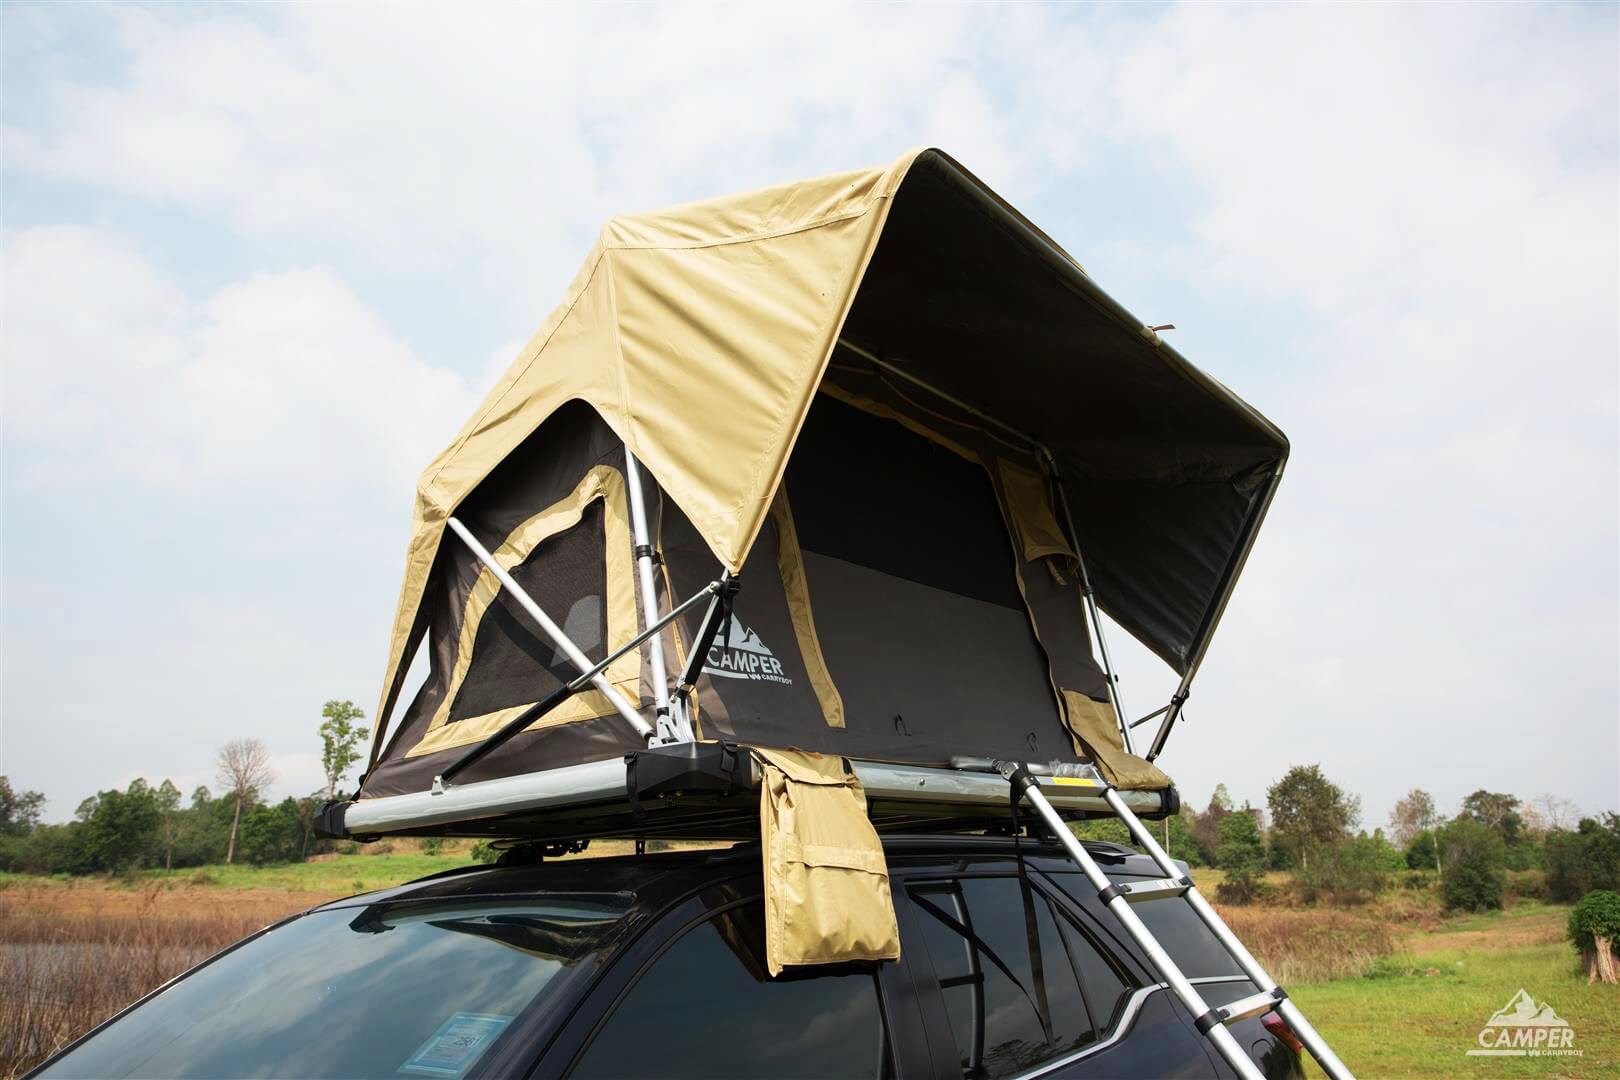 Carryboy Camper Dachzelt für 2 bis 3 Personen für alle Fahrzeuge große seitliche Fenster